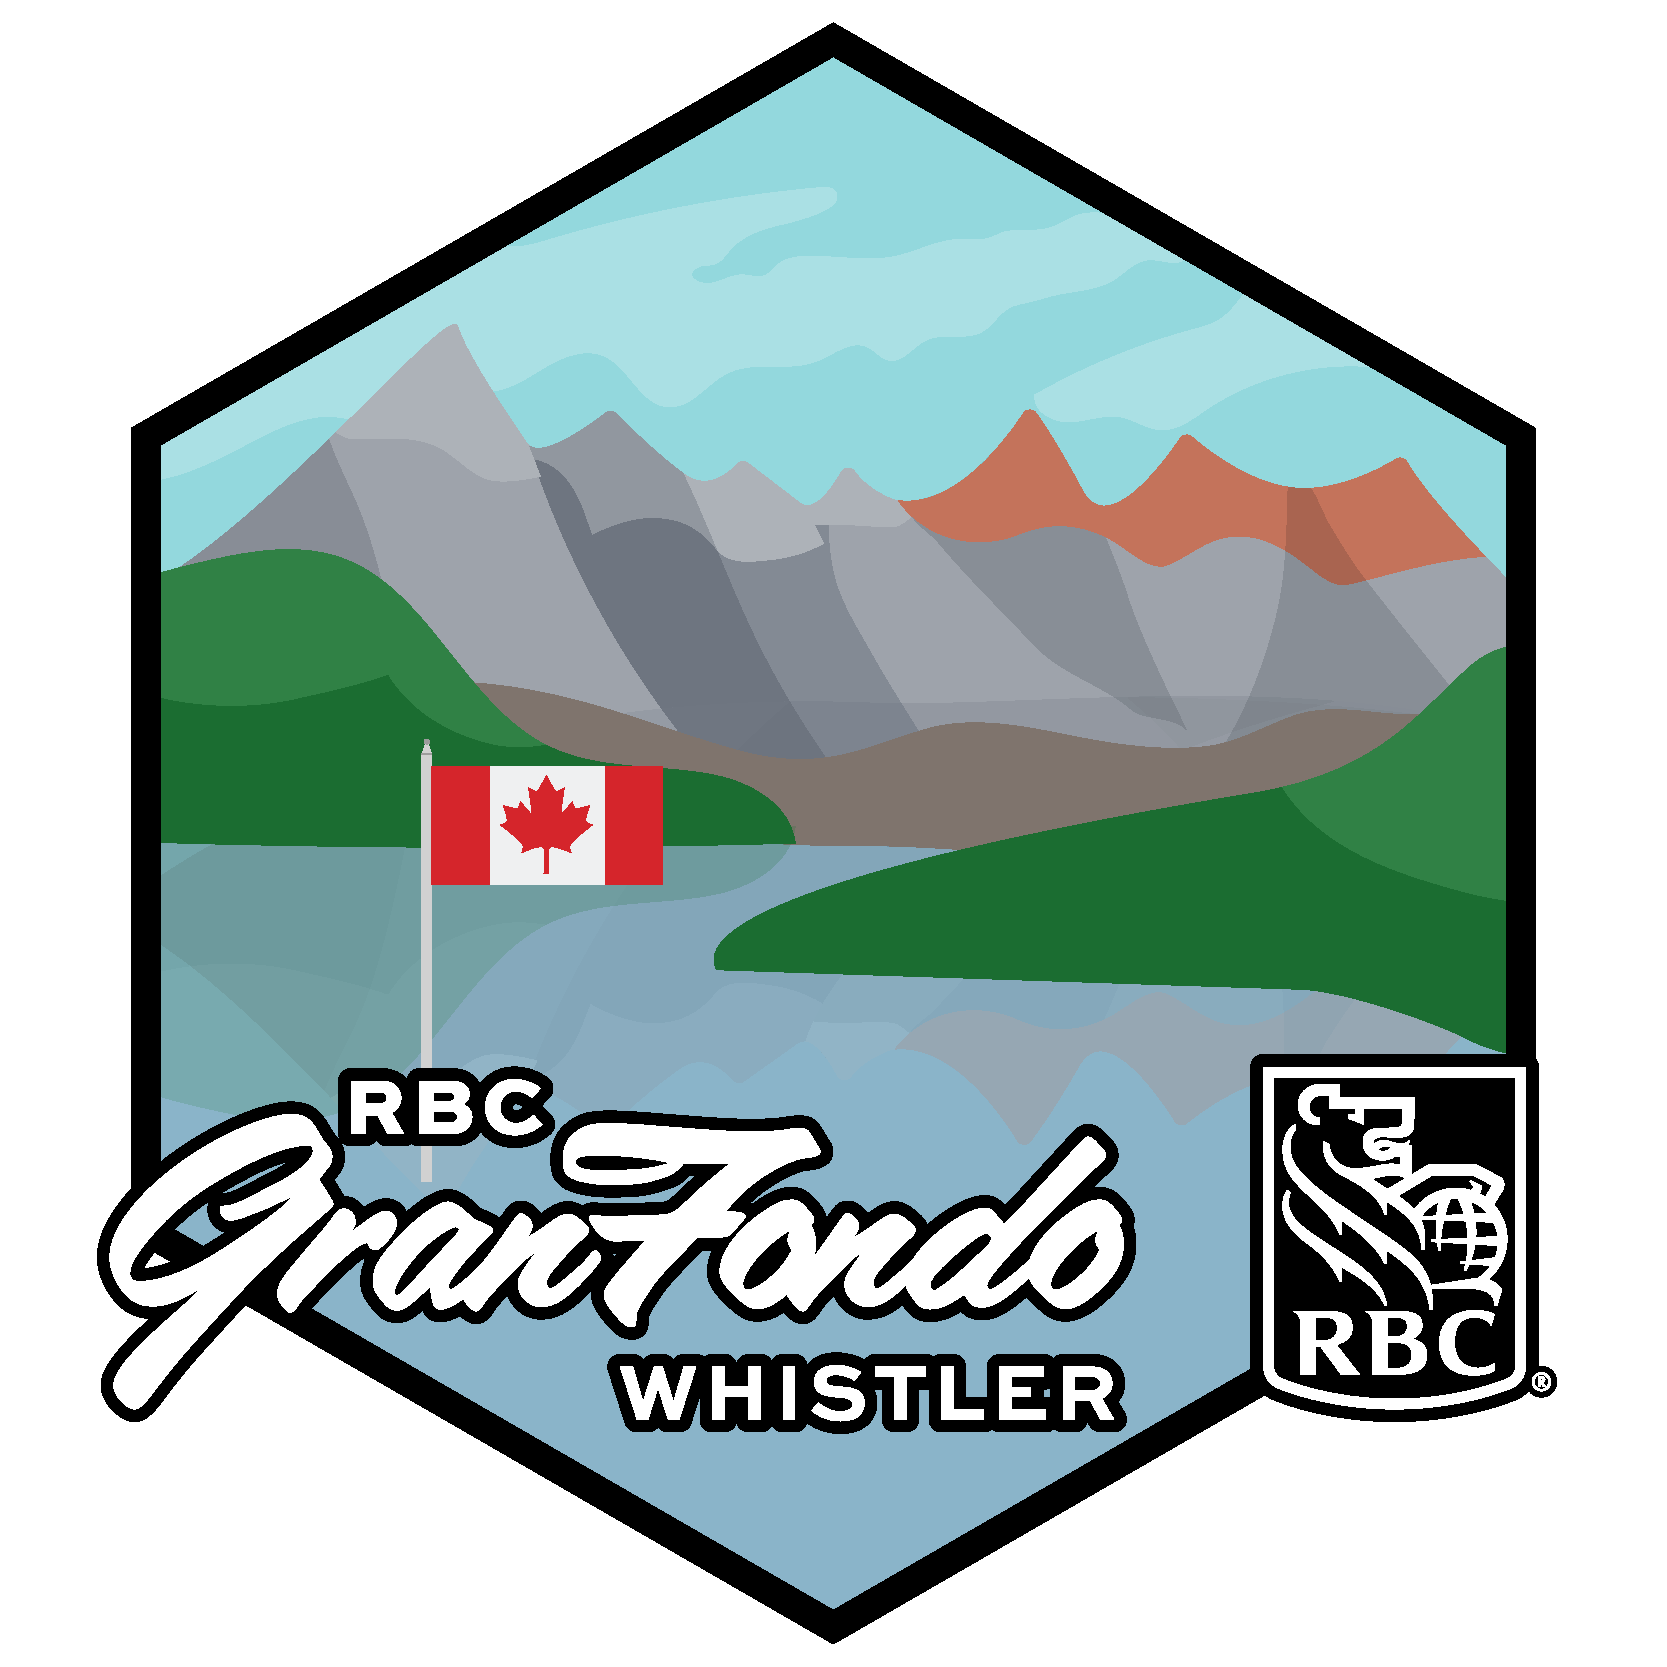 RBC GranFondo Whistler Herausforderung